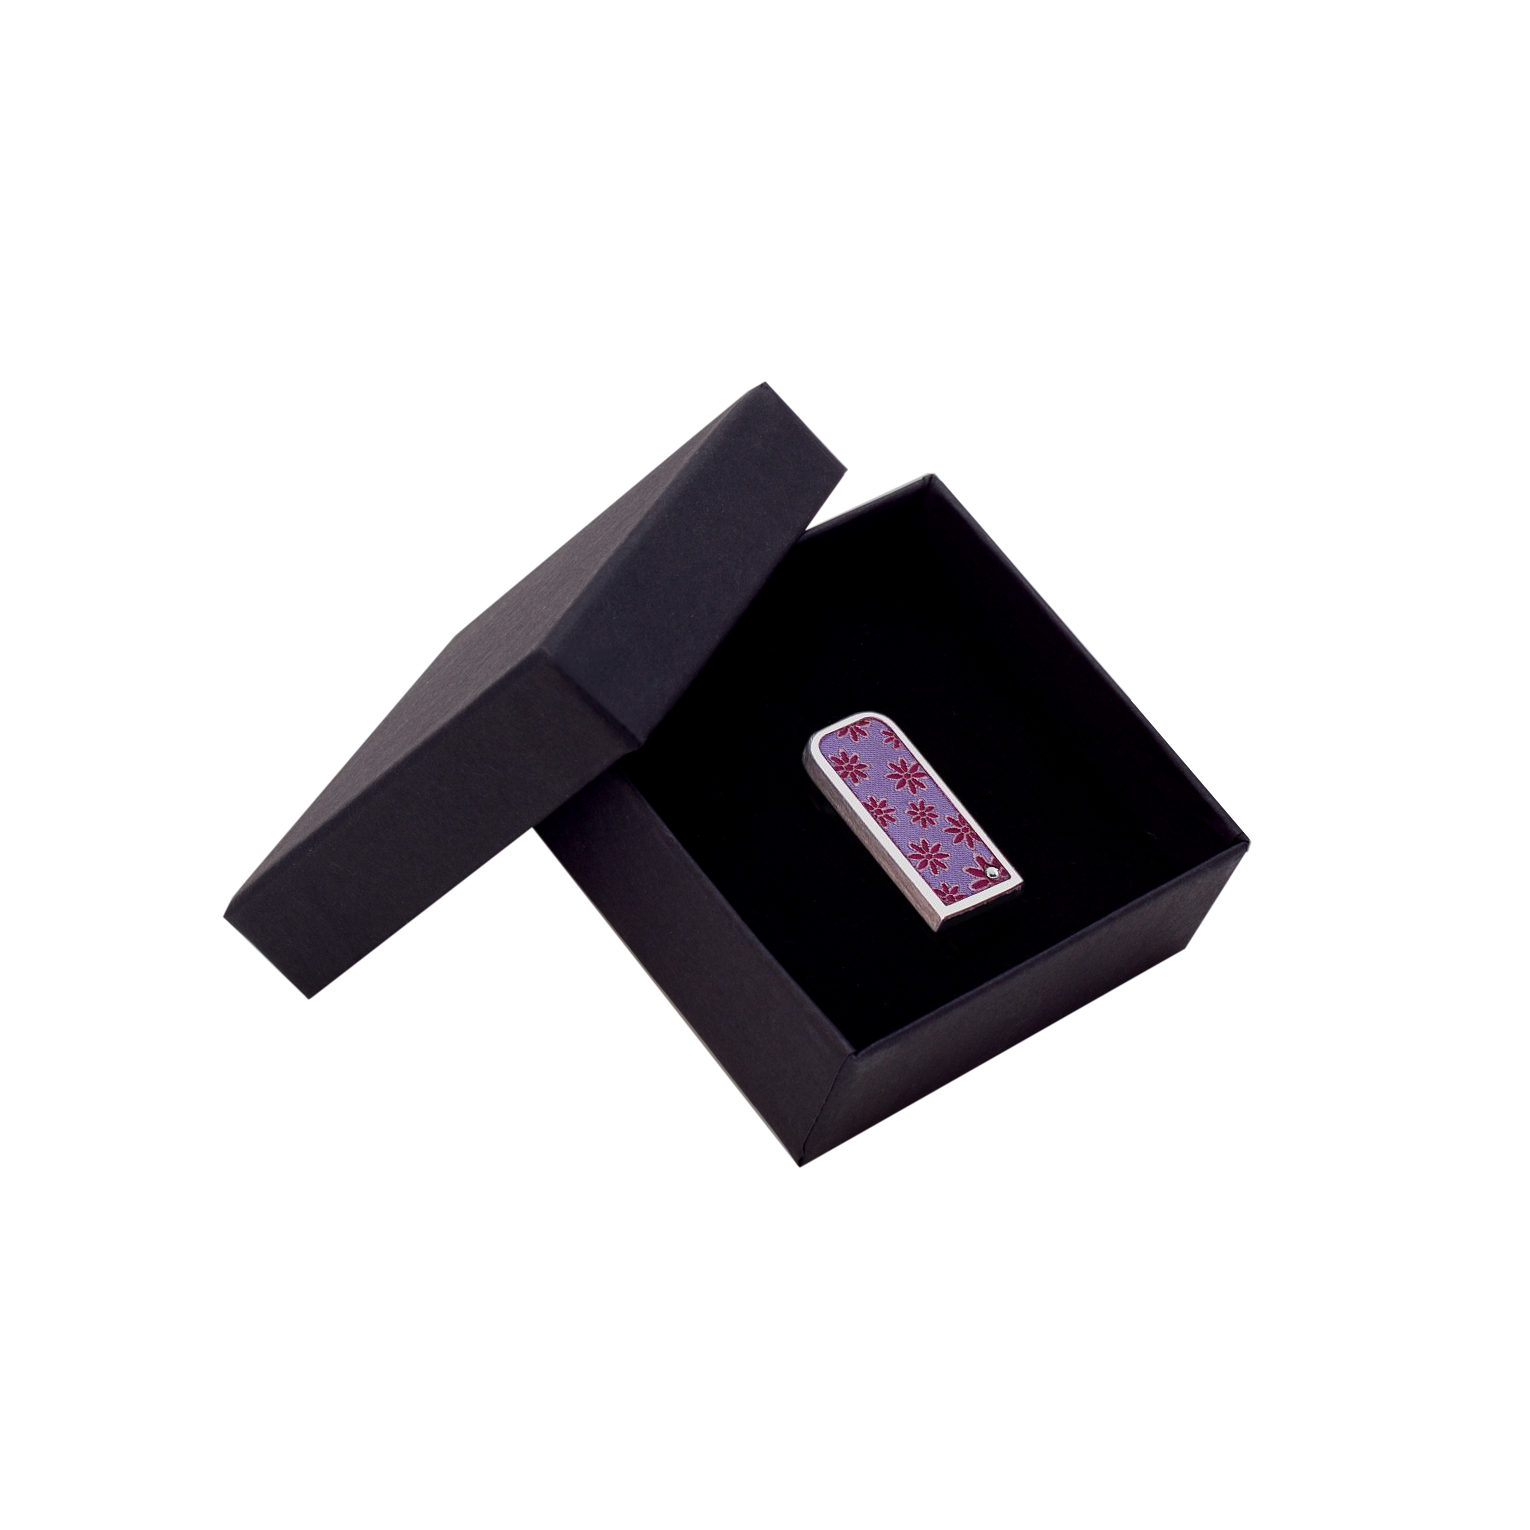 USB-Stick in violetter Textiloptik als Werbeträger